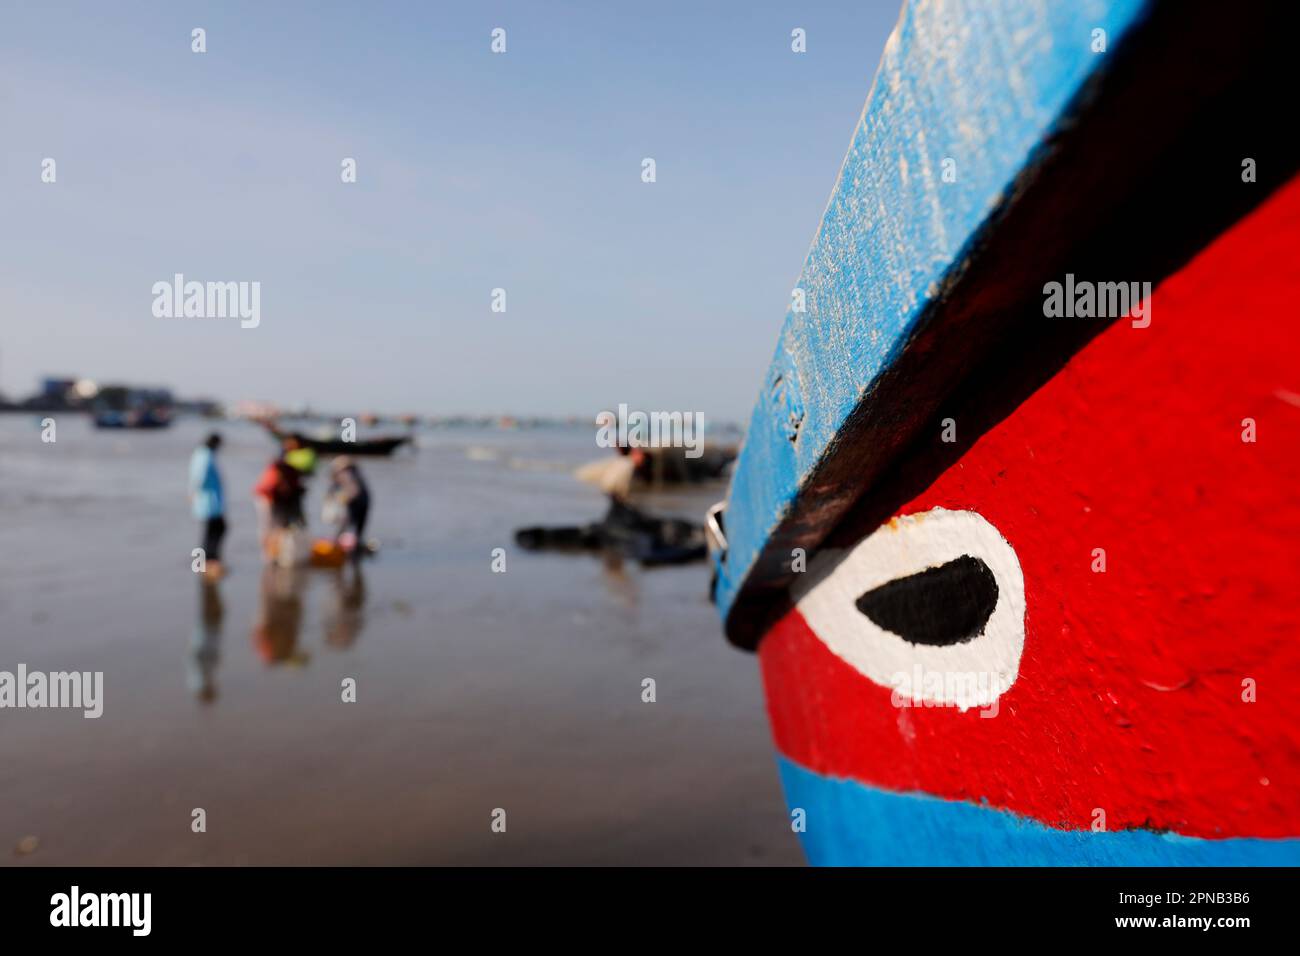 Hang Dua Bay, barca da pesca in arrivo sulla spiaggia con il fermo della notte. Barca da pesca dipinta con occhio di buona fortuna. Vung Tau. Vietnam. Foto Stock